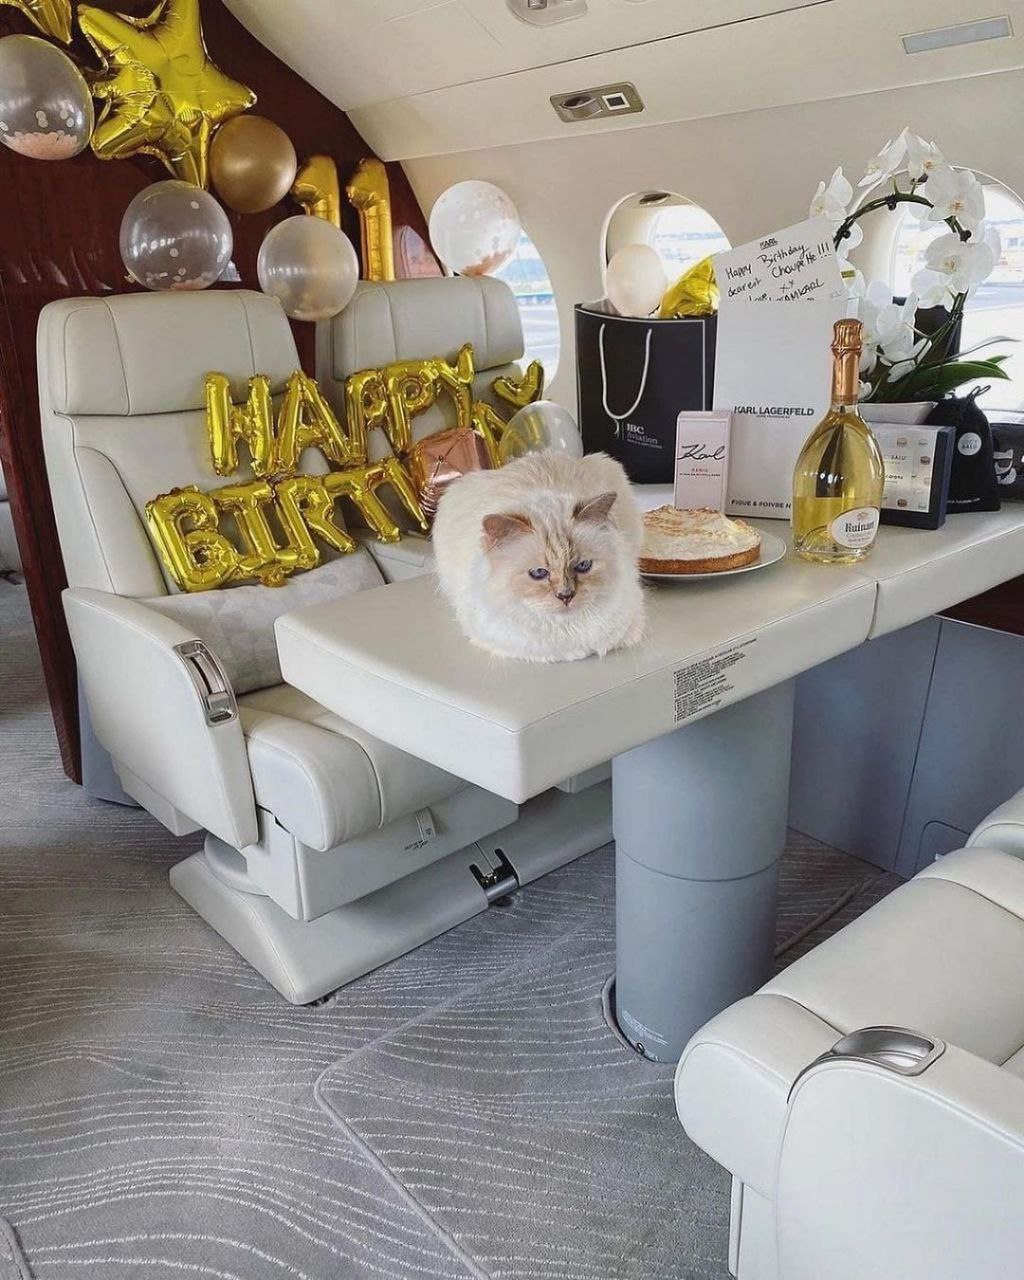 شوپت لاگرفلد یکی از مشهورترین و ثورتمندترین گربه های دنیا تولد ۱۱ سالگیش را جشن گرفت!